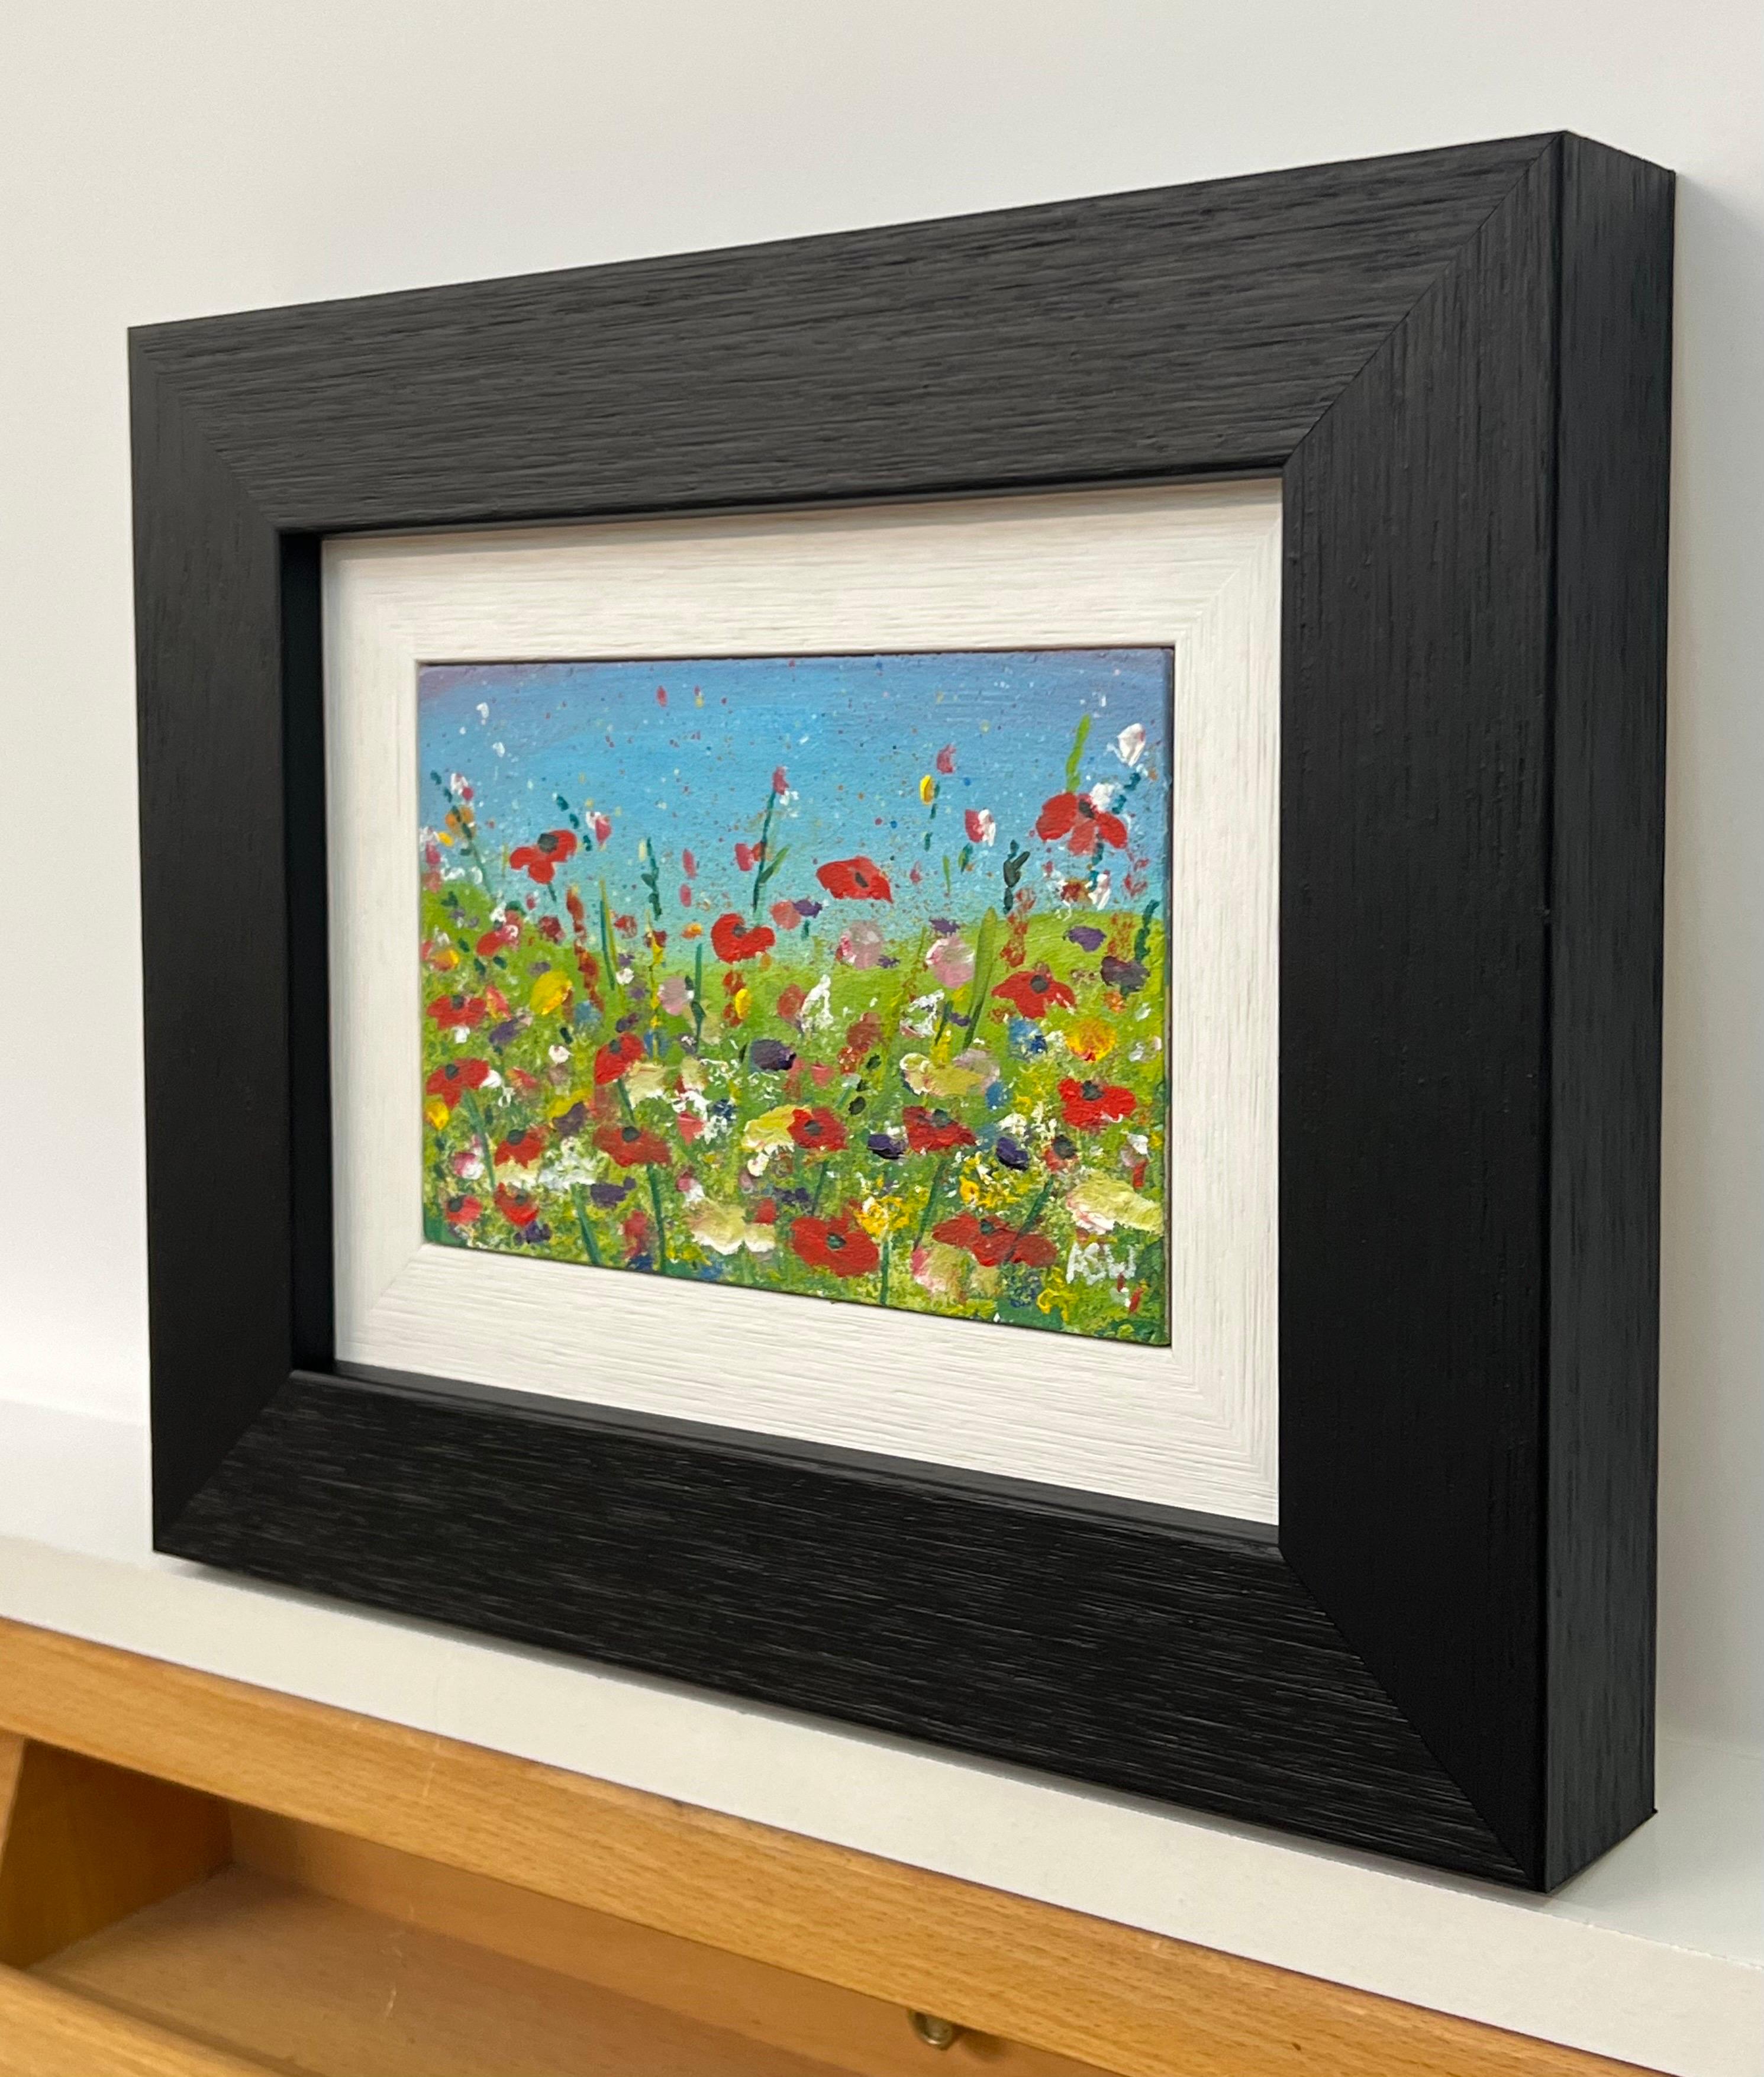 Rote Mohnblumen in Miniaturformat auf einer wilden grünen Wiese mit blauem Himmel in der englischen Landschaft von der zeitgenössischen britischen Künstlerin Angela Wakefield. Eingerahmt in einer zeitgenössischen schwarzen Leiste mit weißem Einsatz.